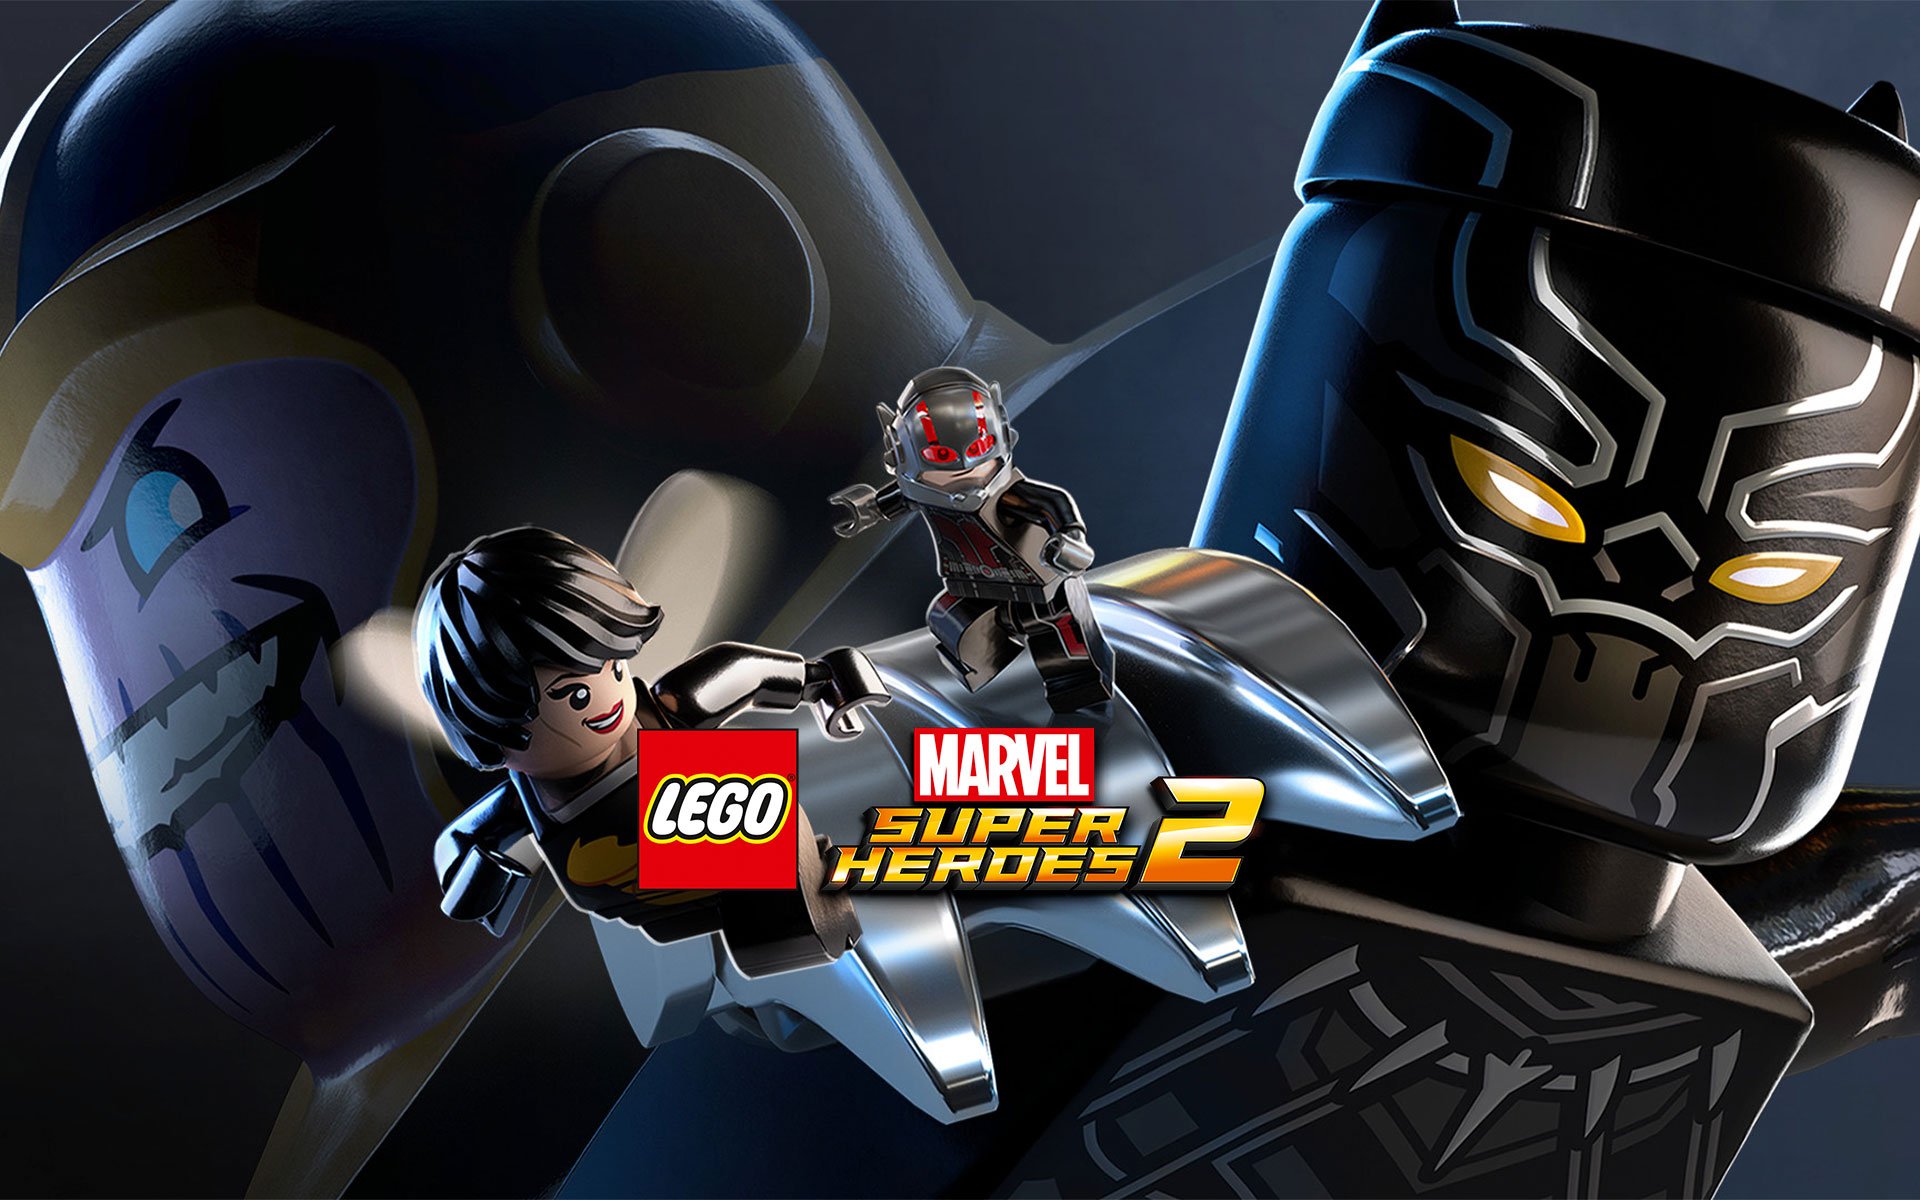 Lego Marvel Avengers season pass details